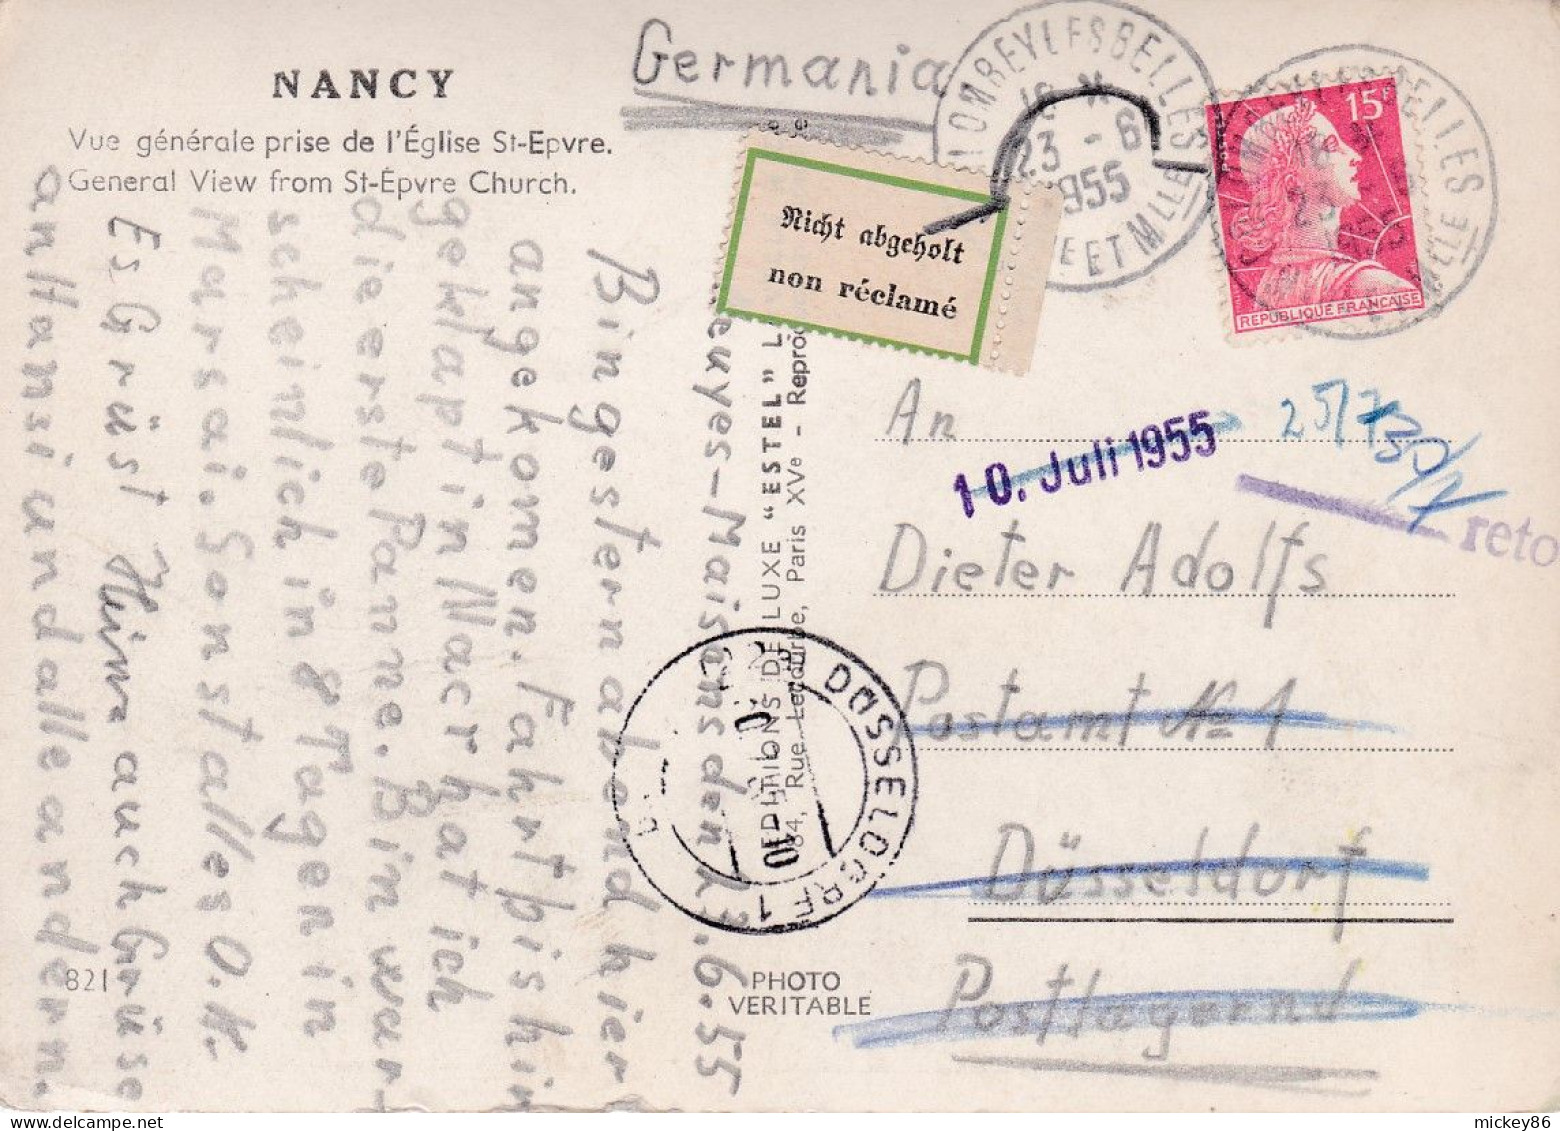 1955 -C.P Nancy De COLOMBEY LES BELLES-54 Pour DUSSELDORF (Allemagne) ,timbre ,vignette "NON RECLAME" , Cachet - 1921-1960: Periodo Moderno